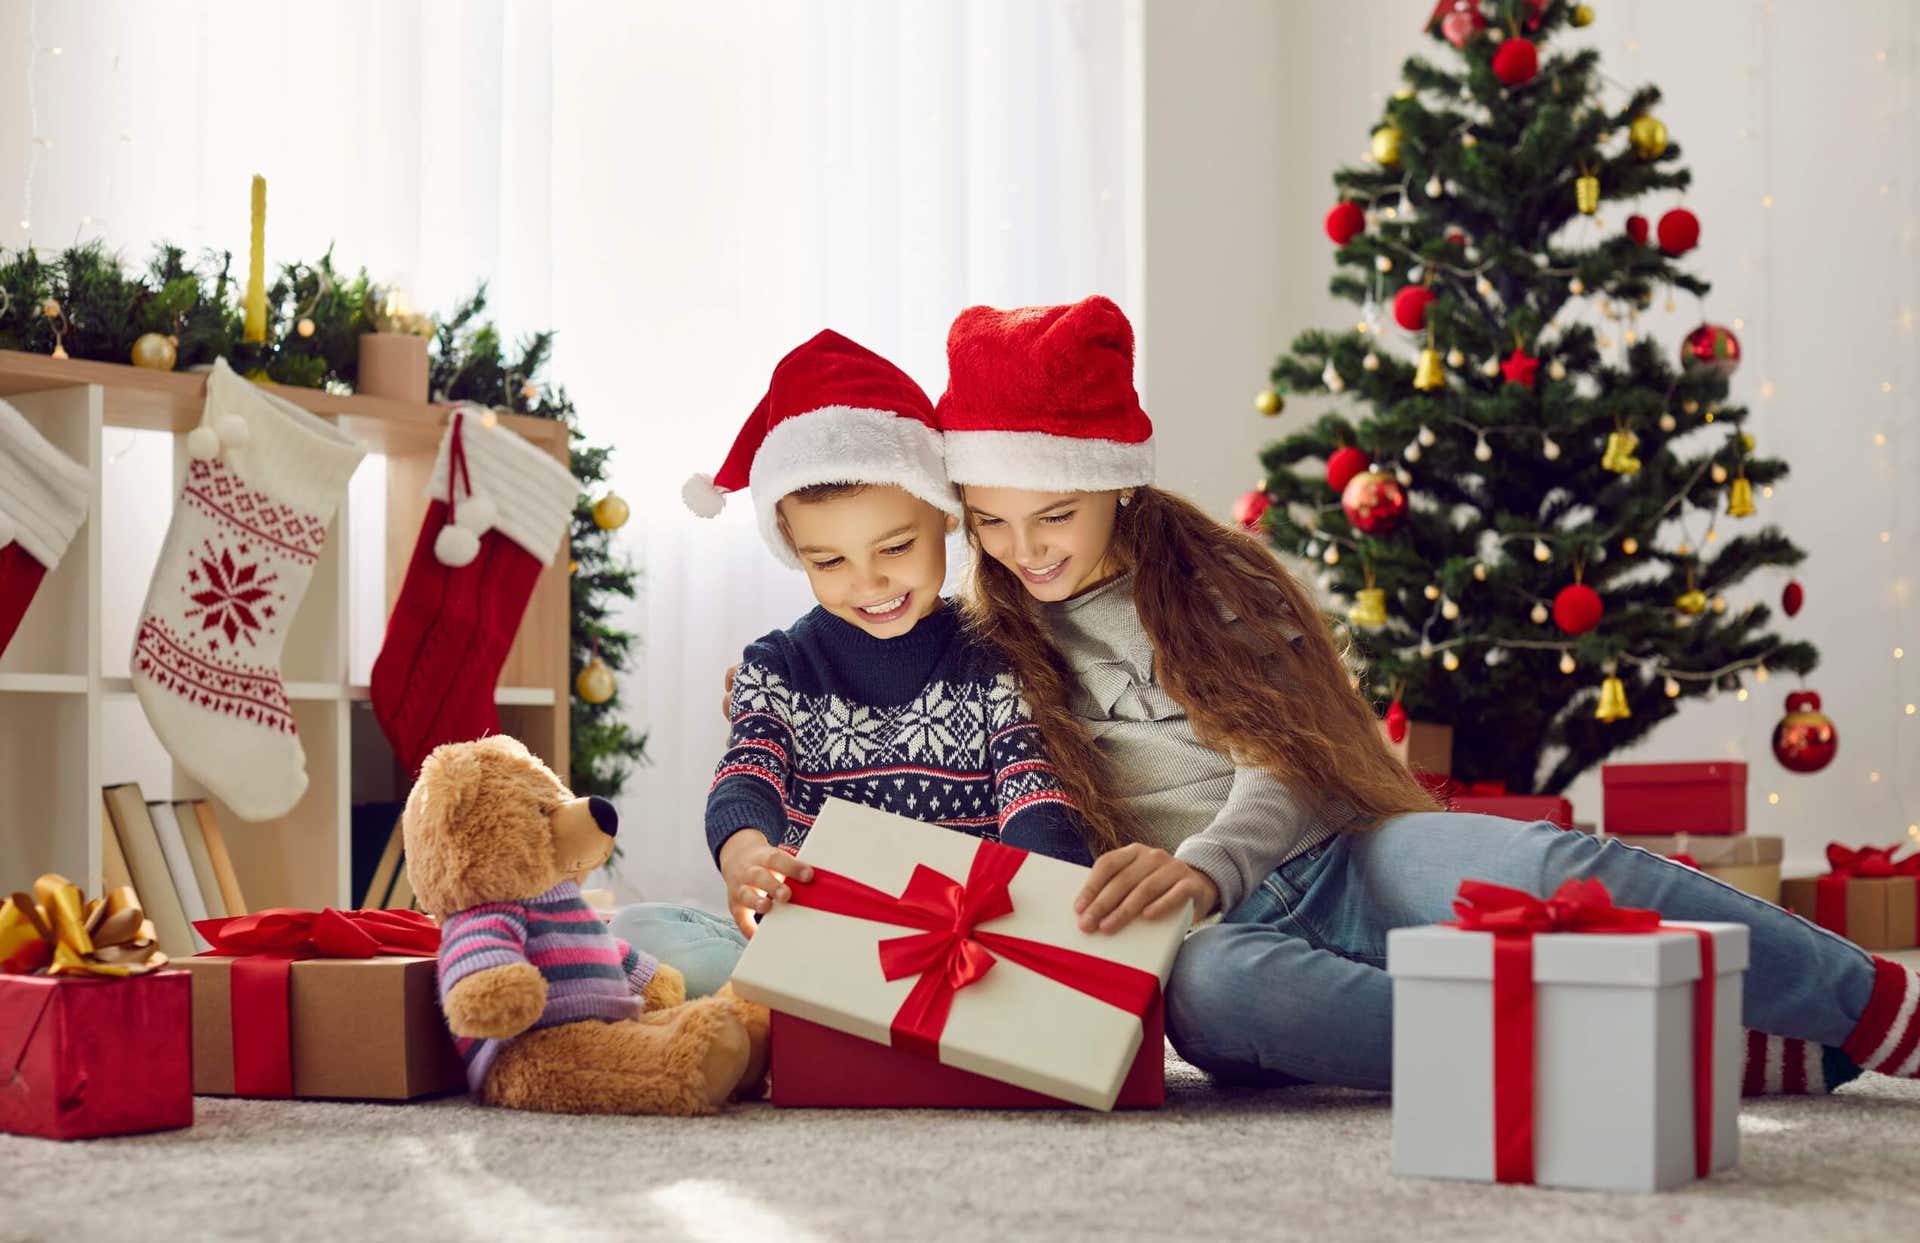 Come consegnare i regali di Natale in modo divertente?